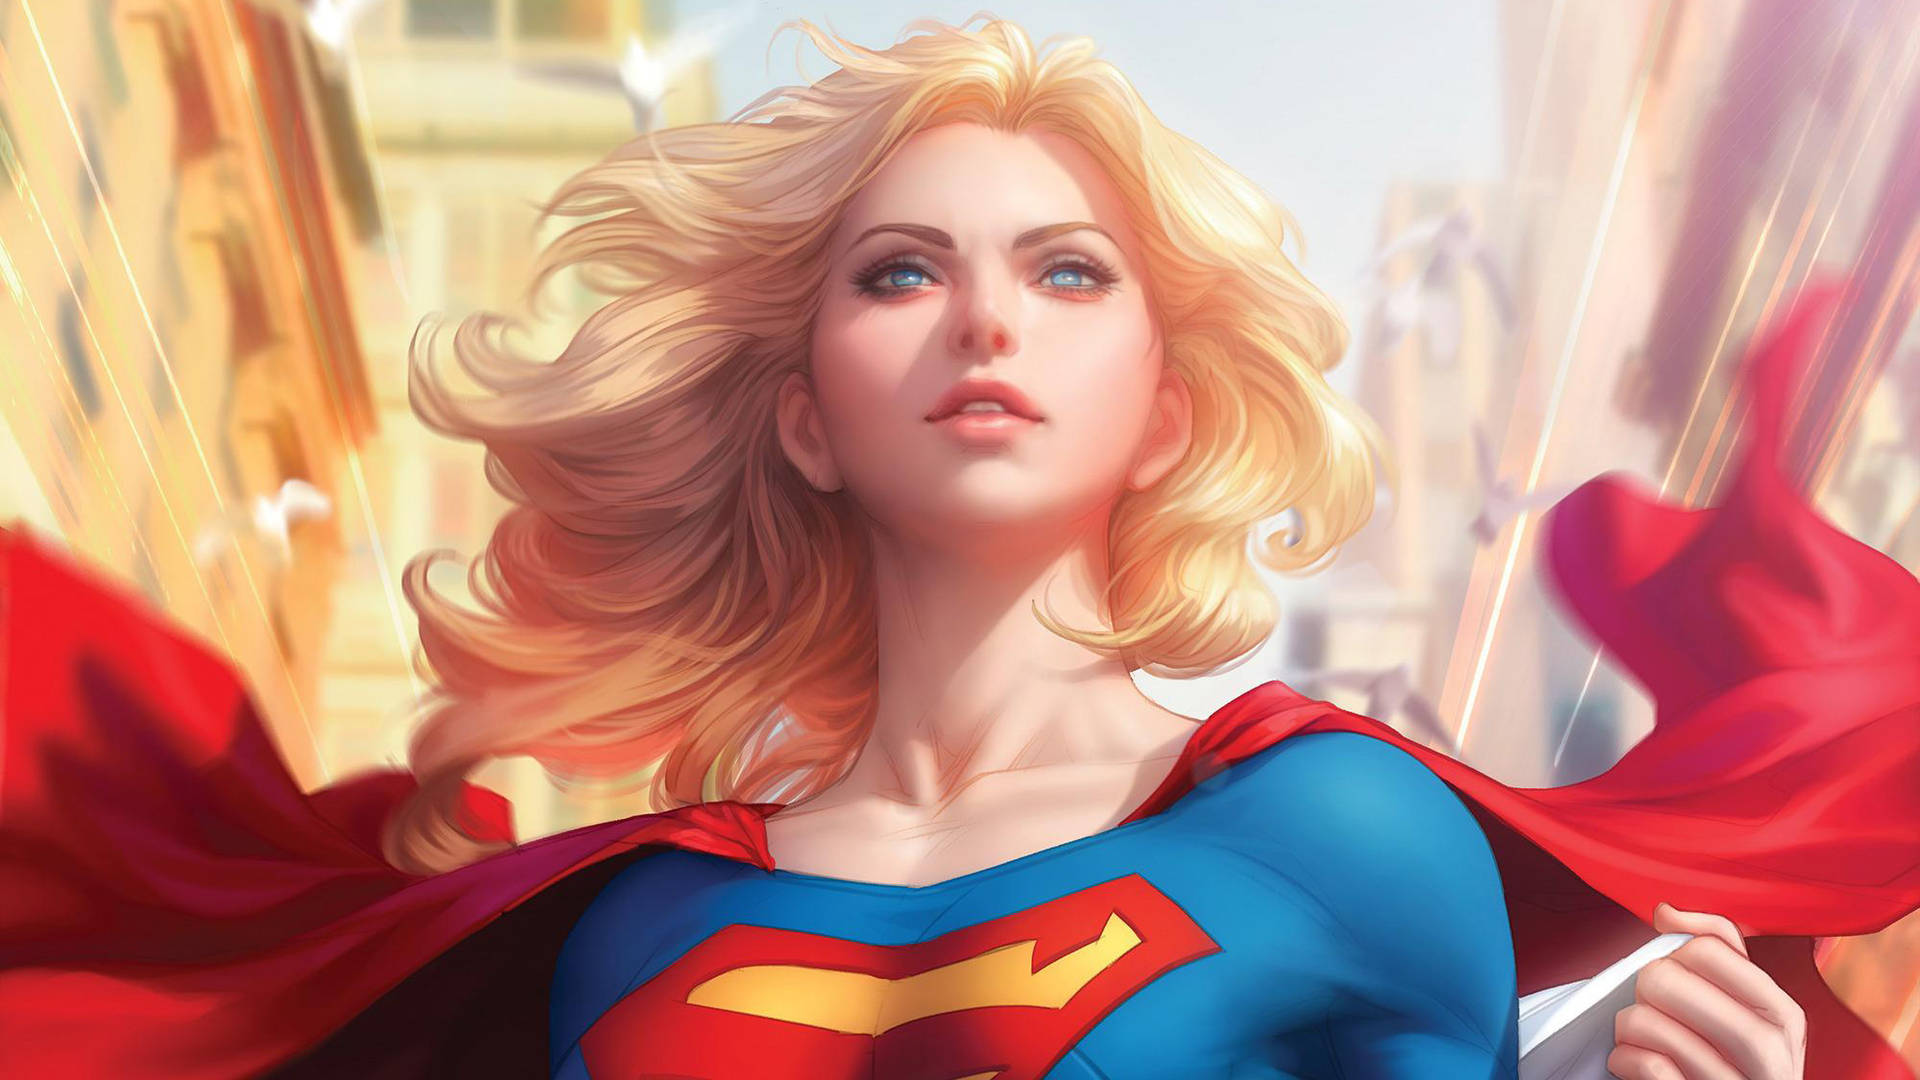 Supergirl Cartoon Portrait Background